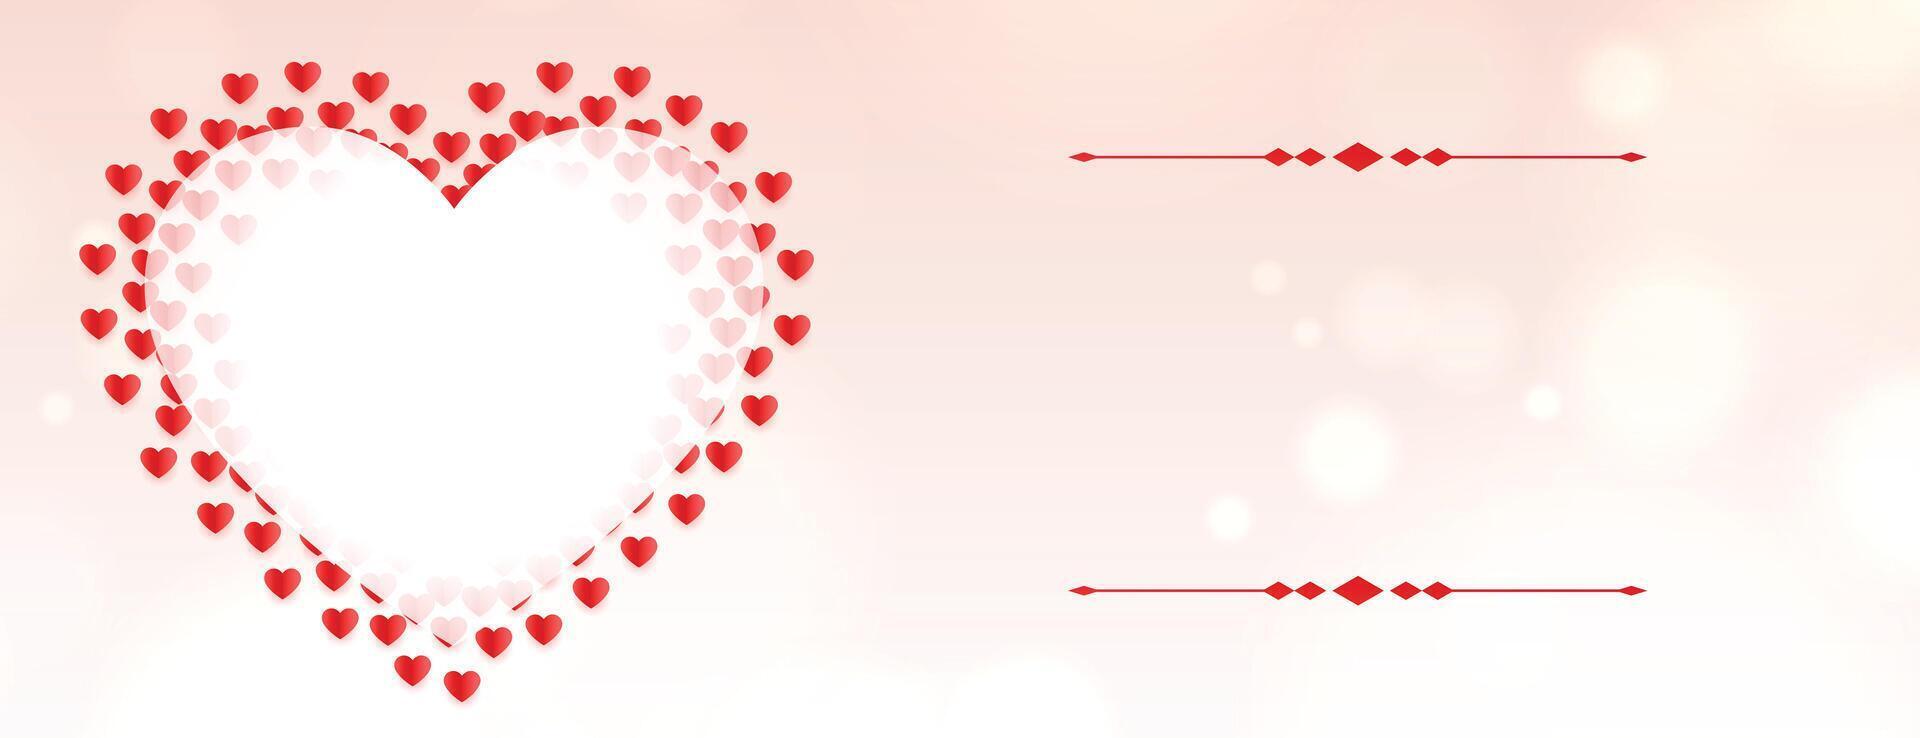 san valentin día corazones bandera romántico diseño vector